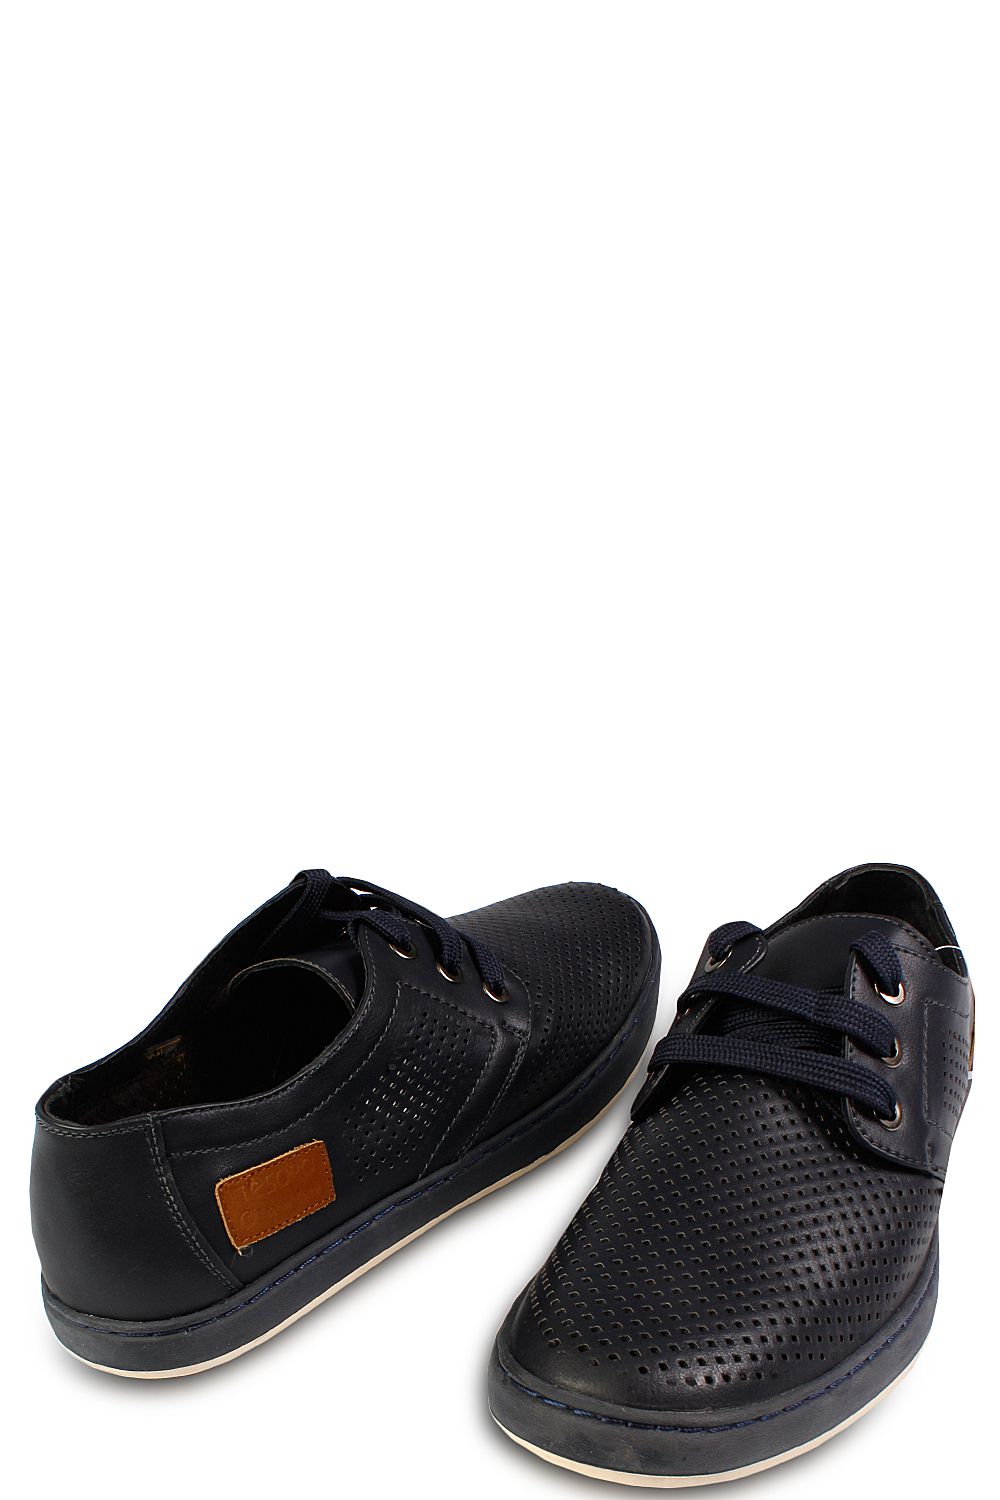 Туфли Tesoro, размер 41, цвет черный - фото 2